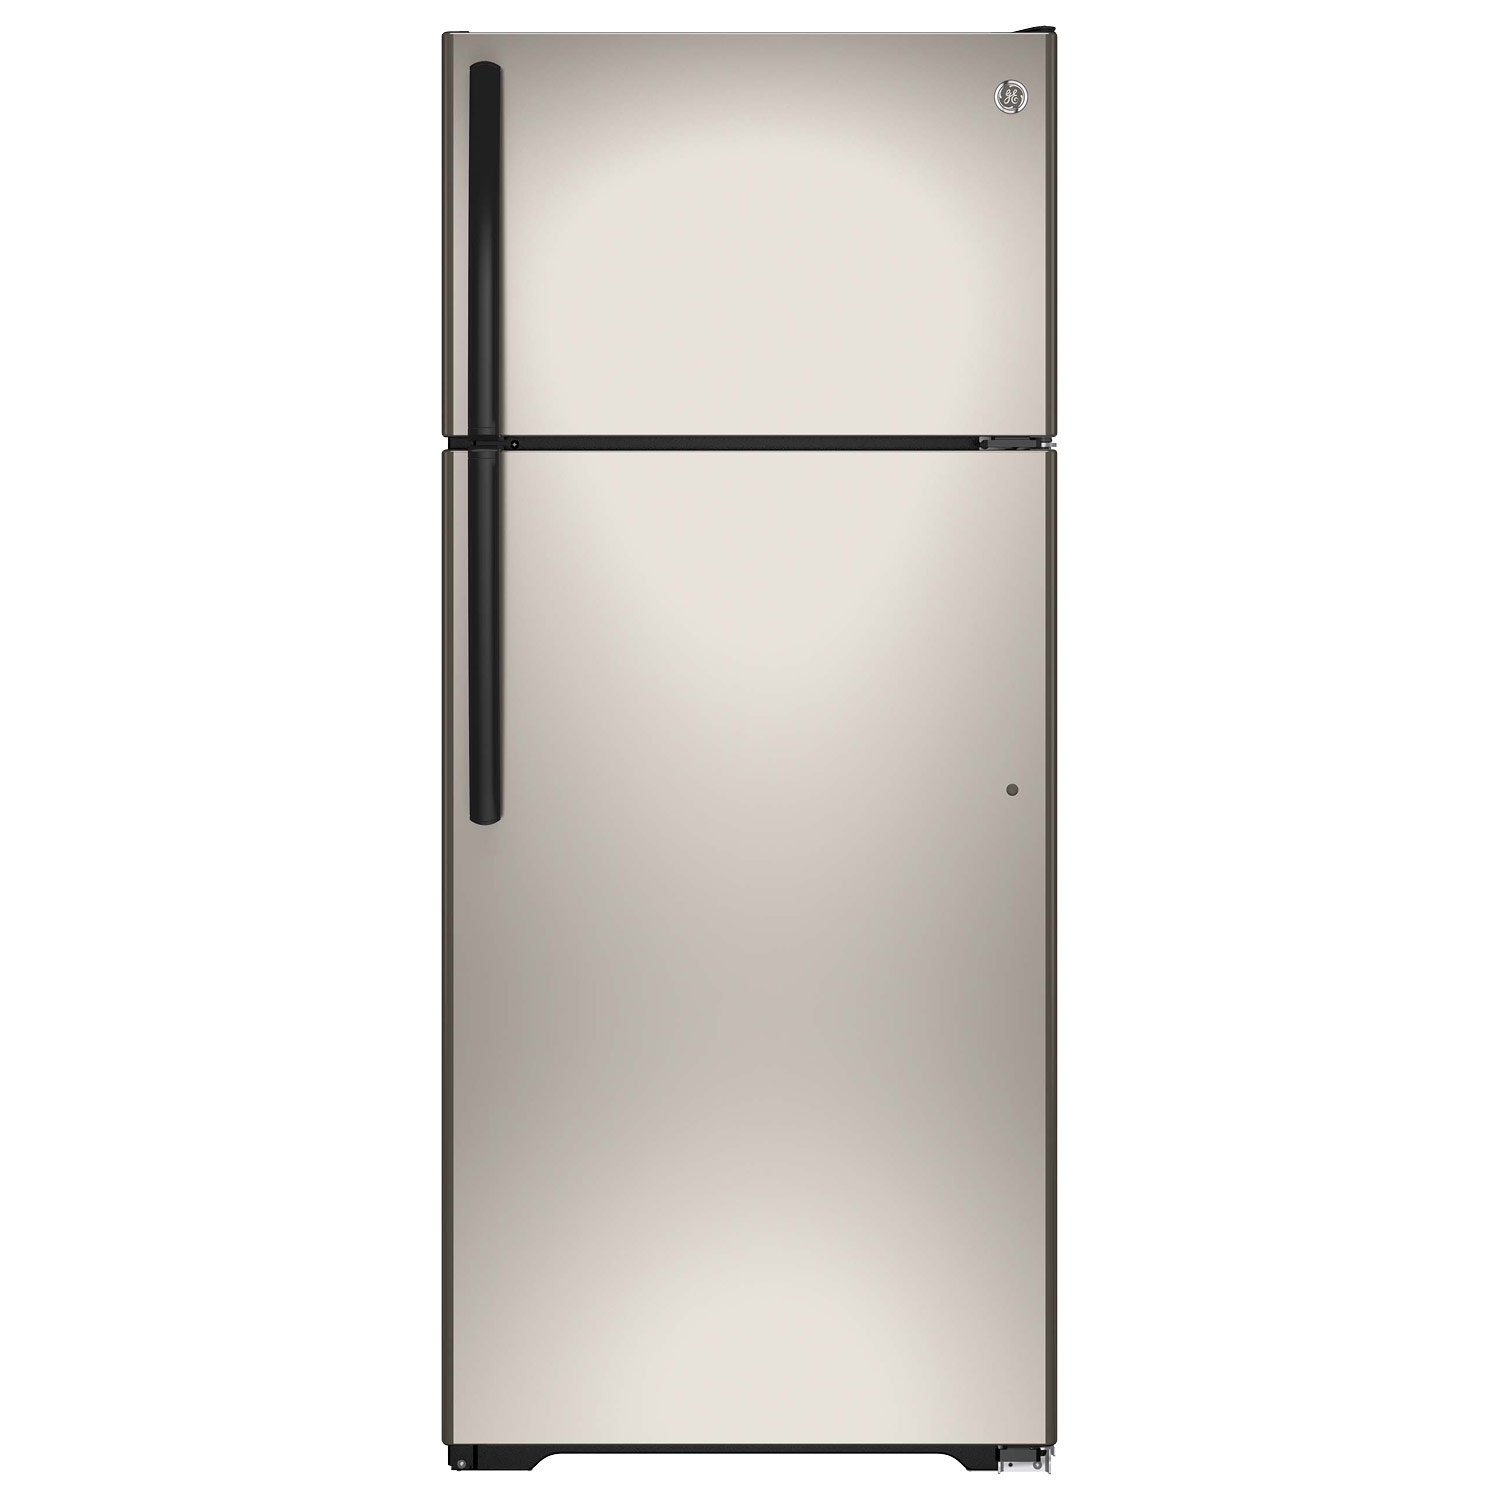 GE Refrigerator Model GTE18CCHSA